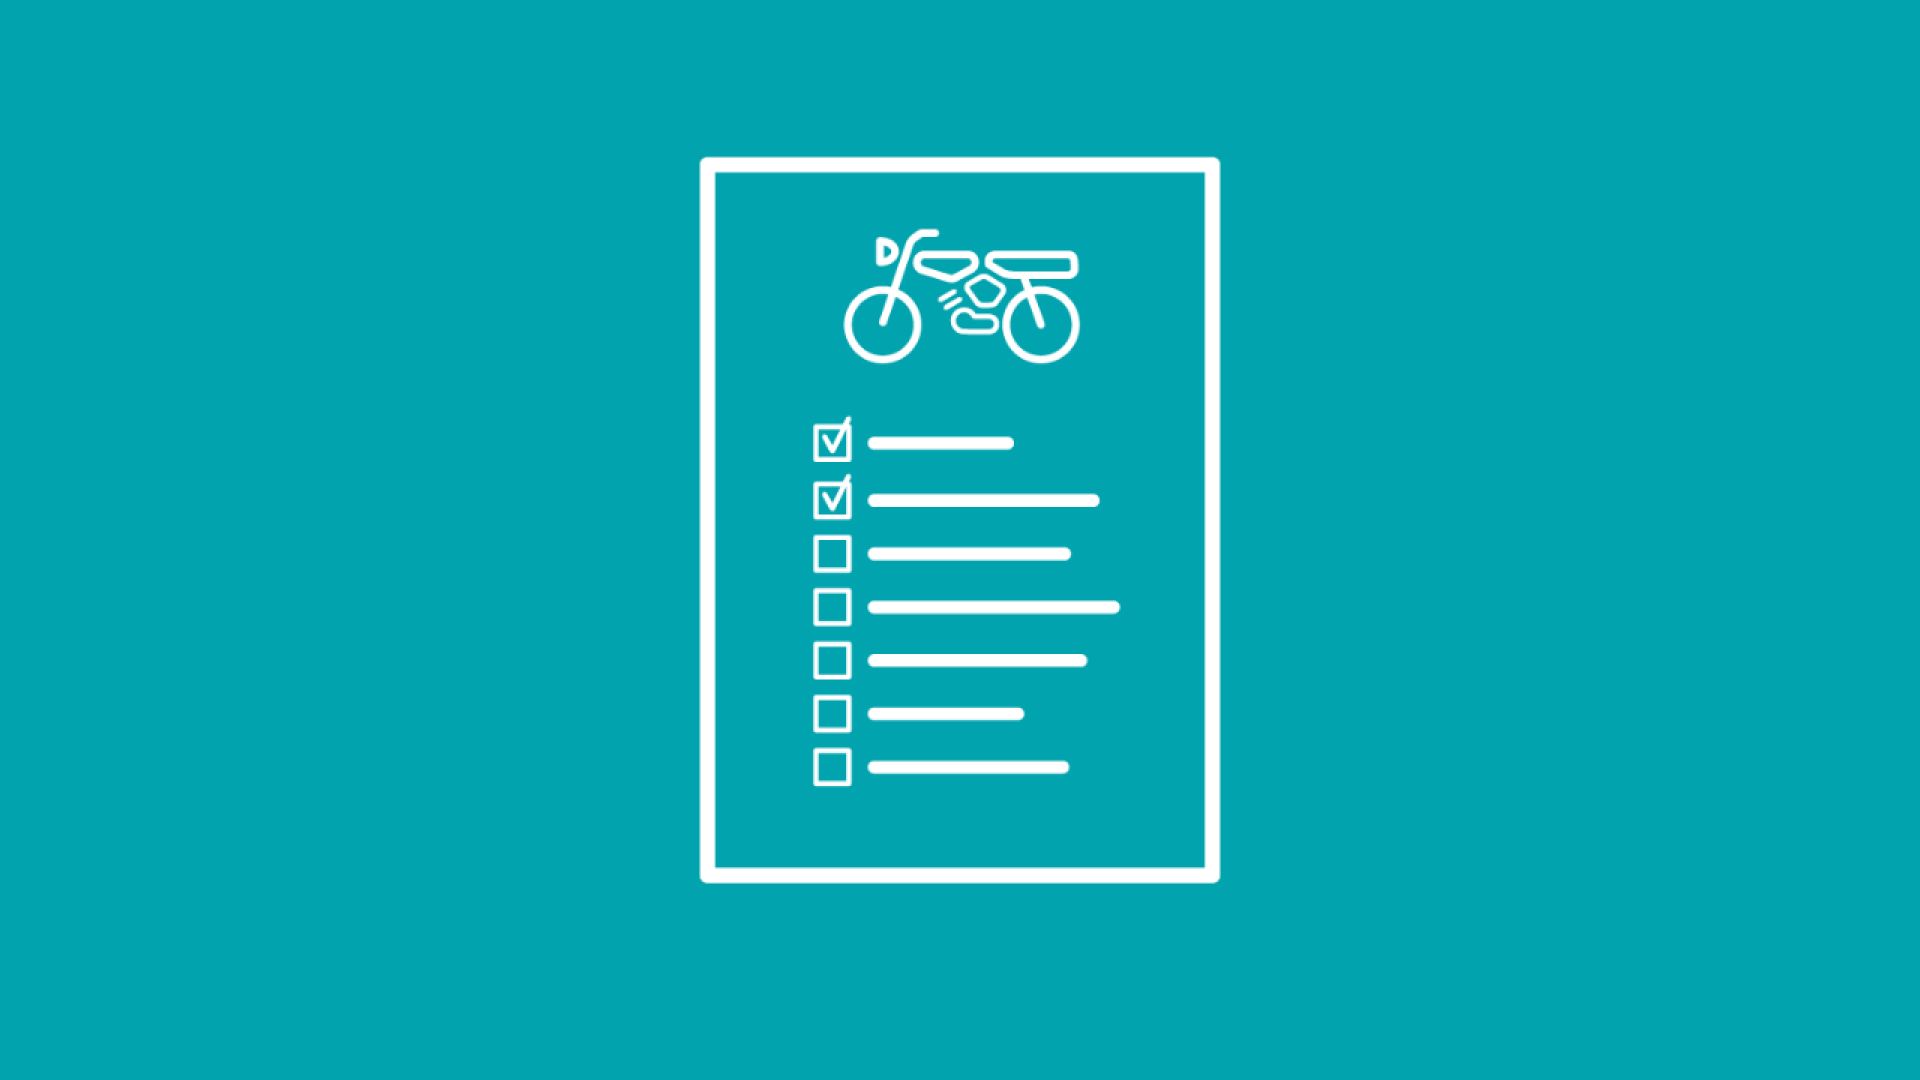 Checkliste mit allen Infos darüber, was man zum Moped anmelden braucht